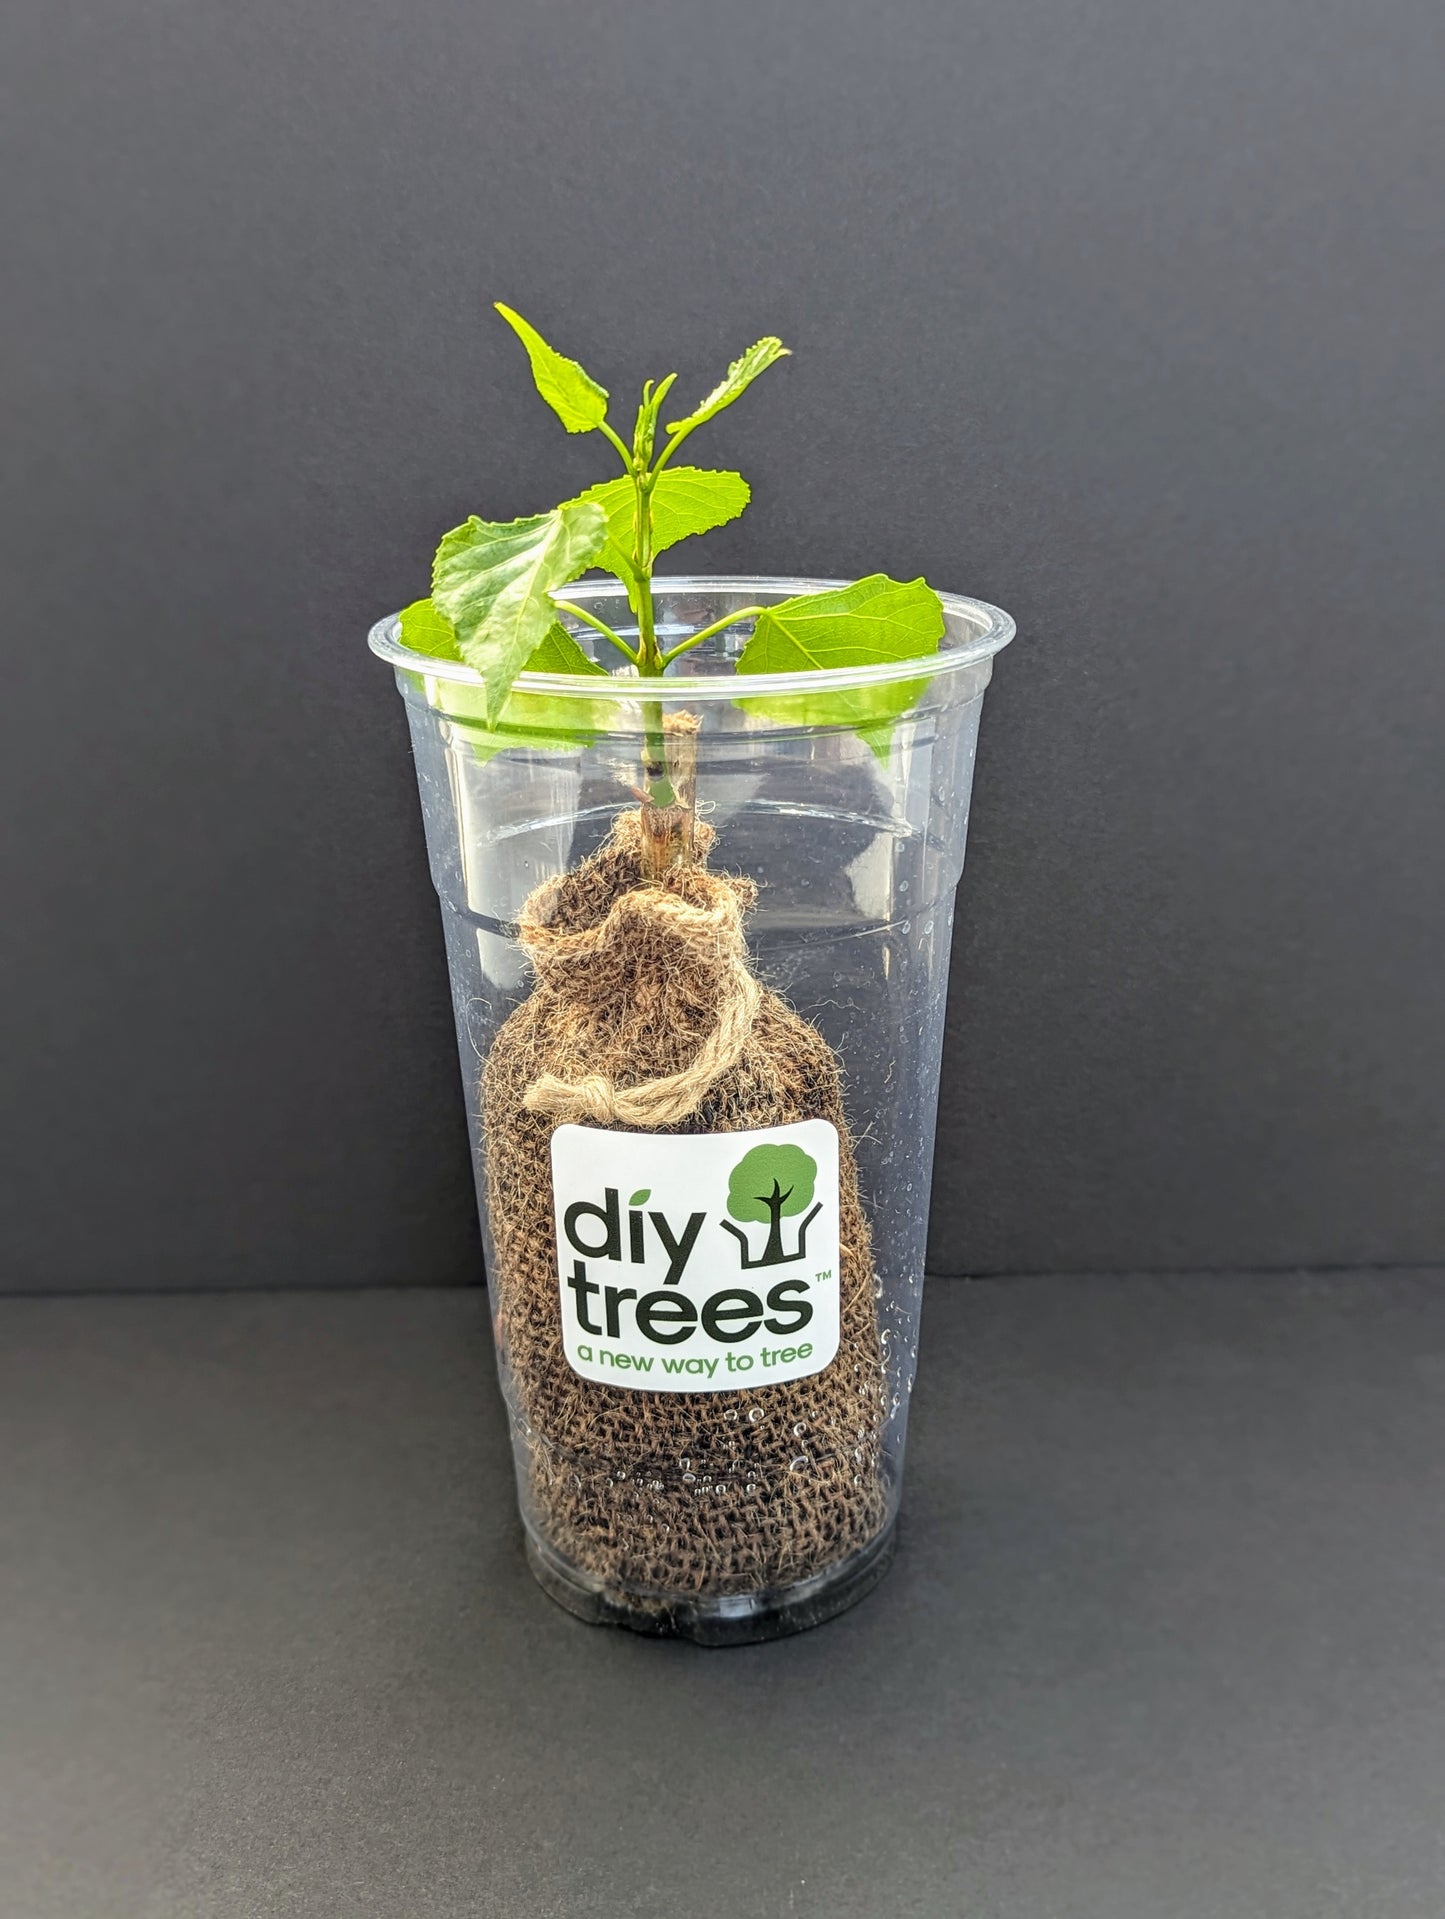 TurboTree | DIY Trees Kit